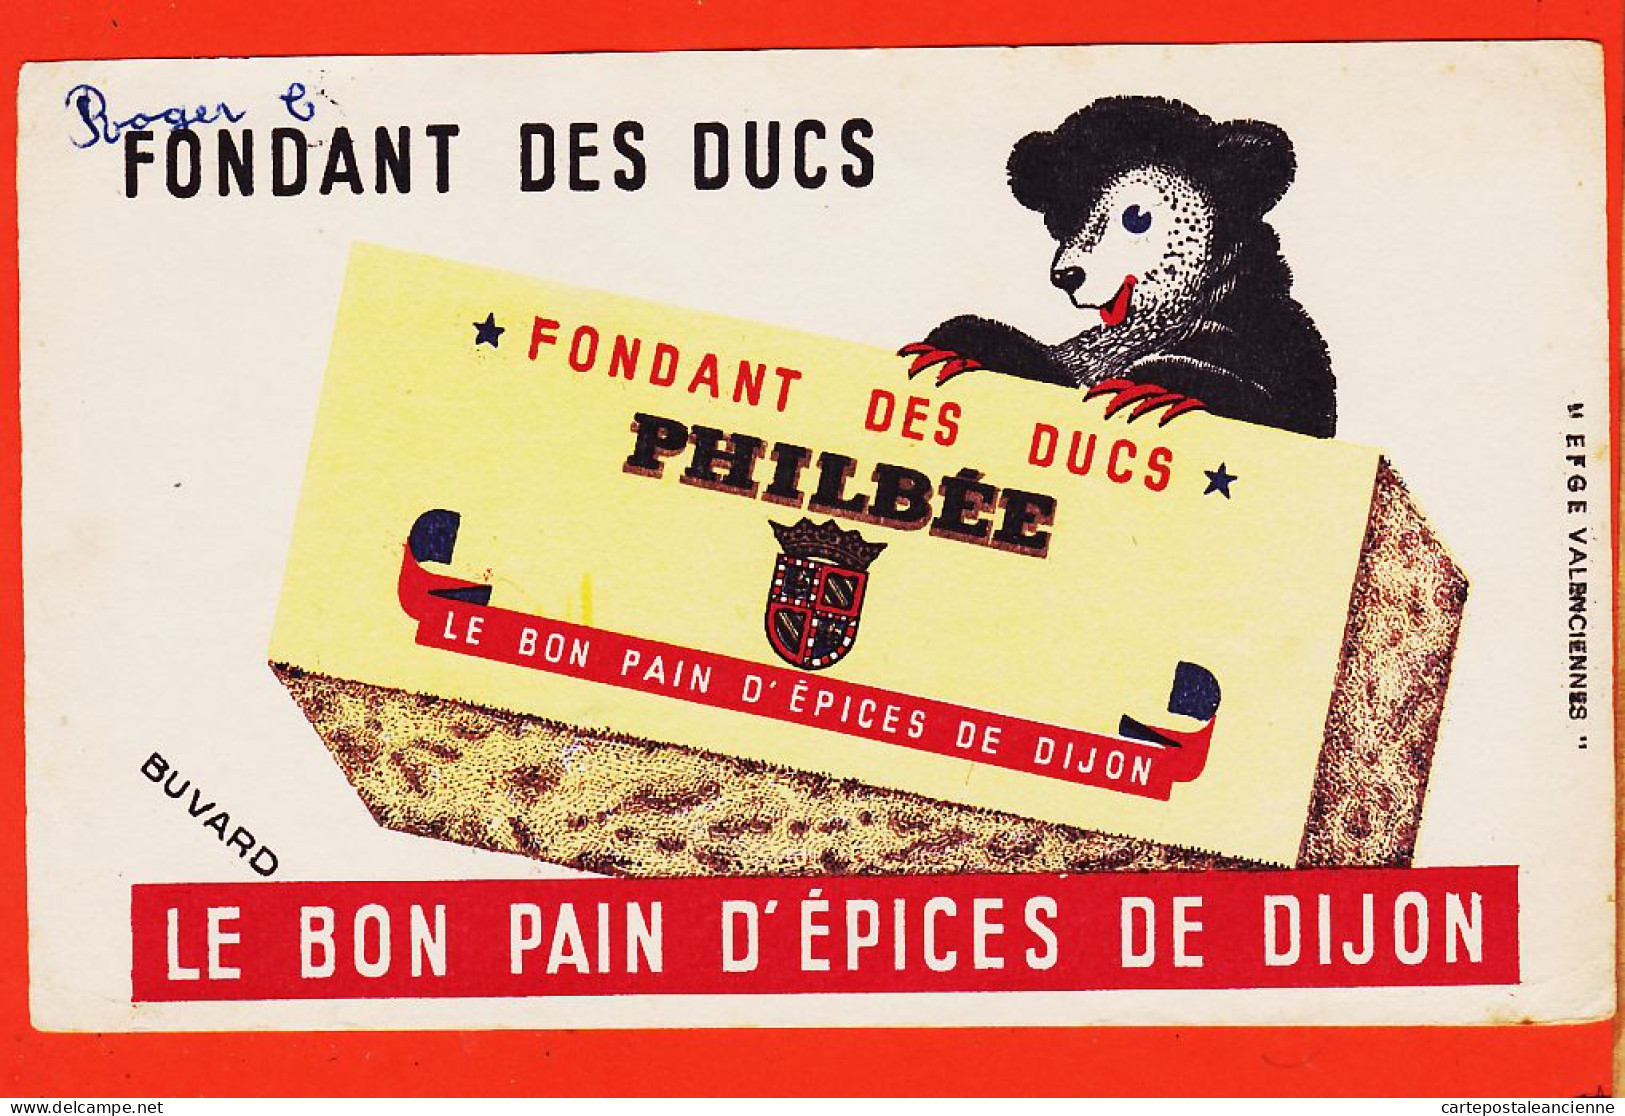 06186 / Fondant Des Ducs PHILBEE Le Bon Pain D'Epices De DIJON (21) Buvard-Blotter EFGE VALENCIENNES 59-Nord  - Honigkuchen-Lebkuchen